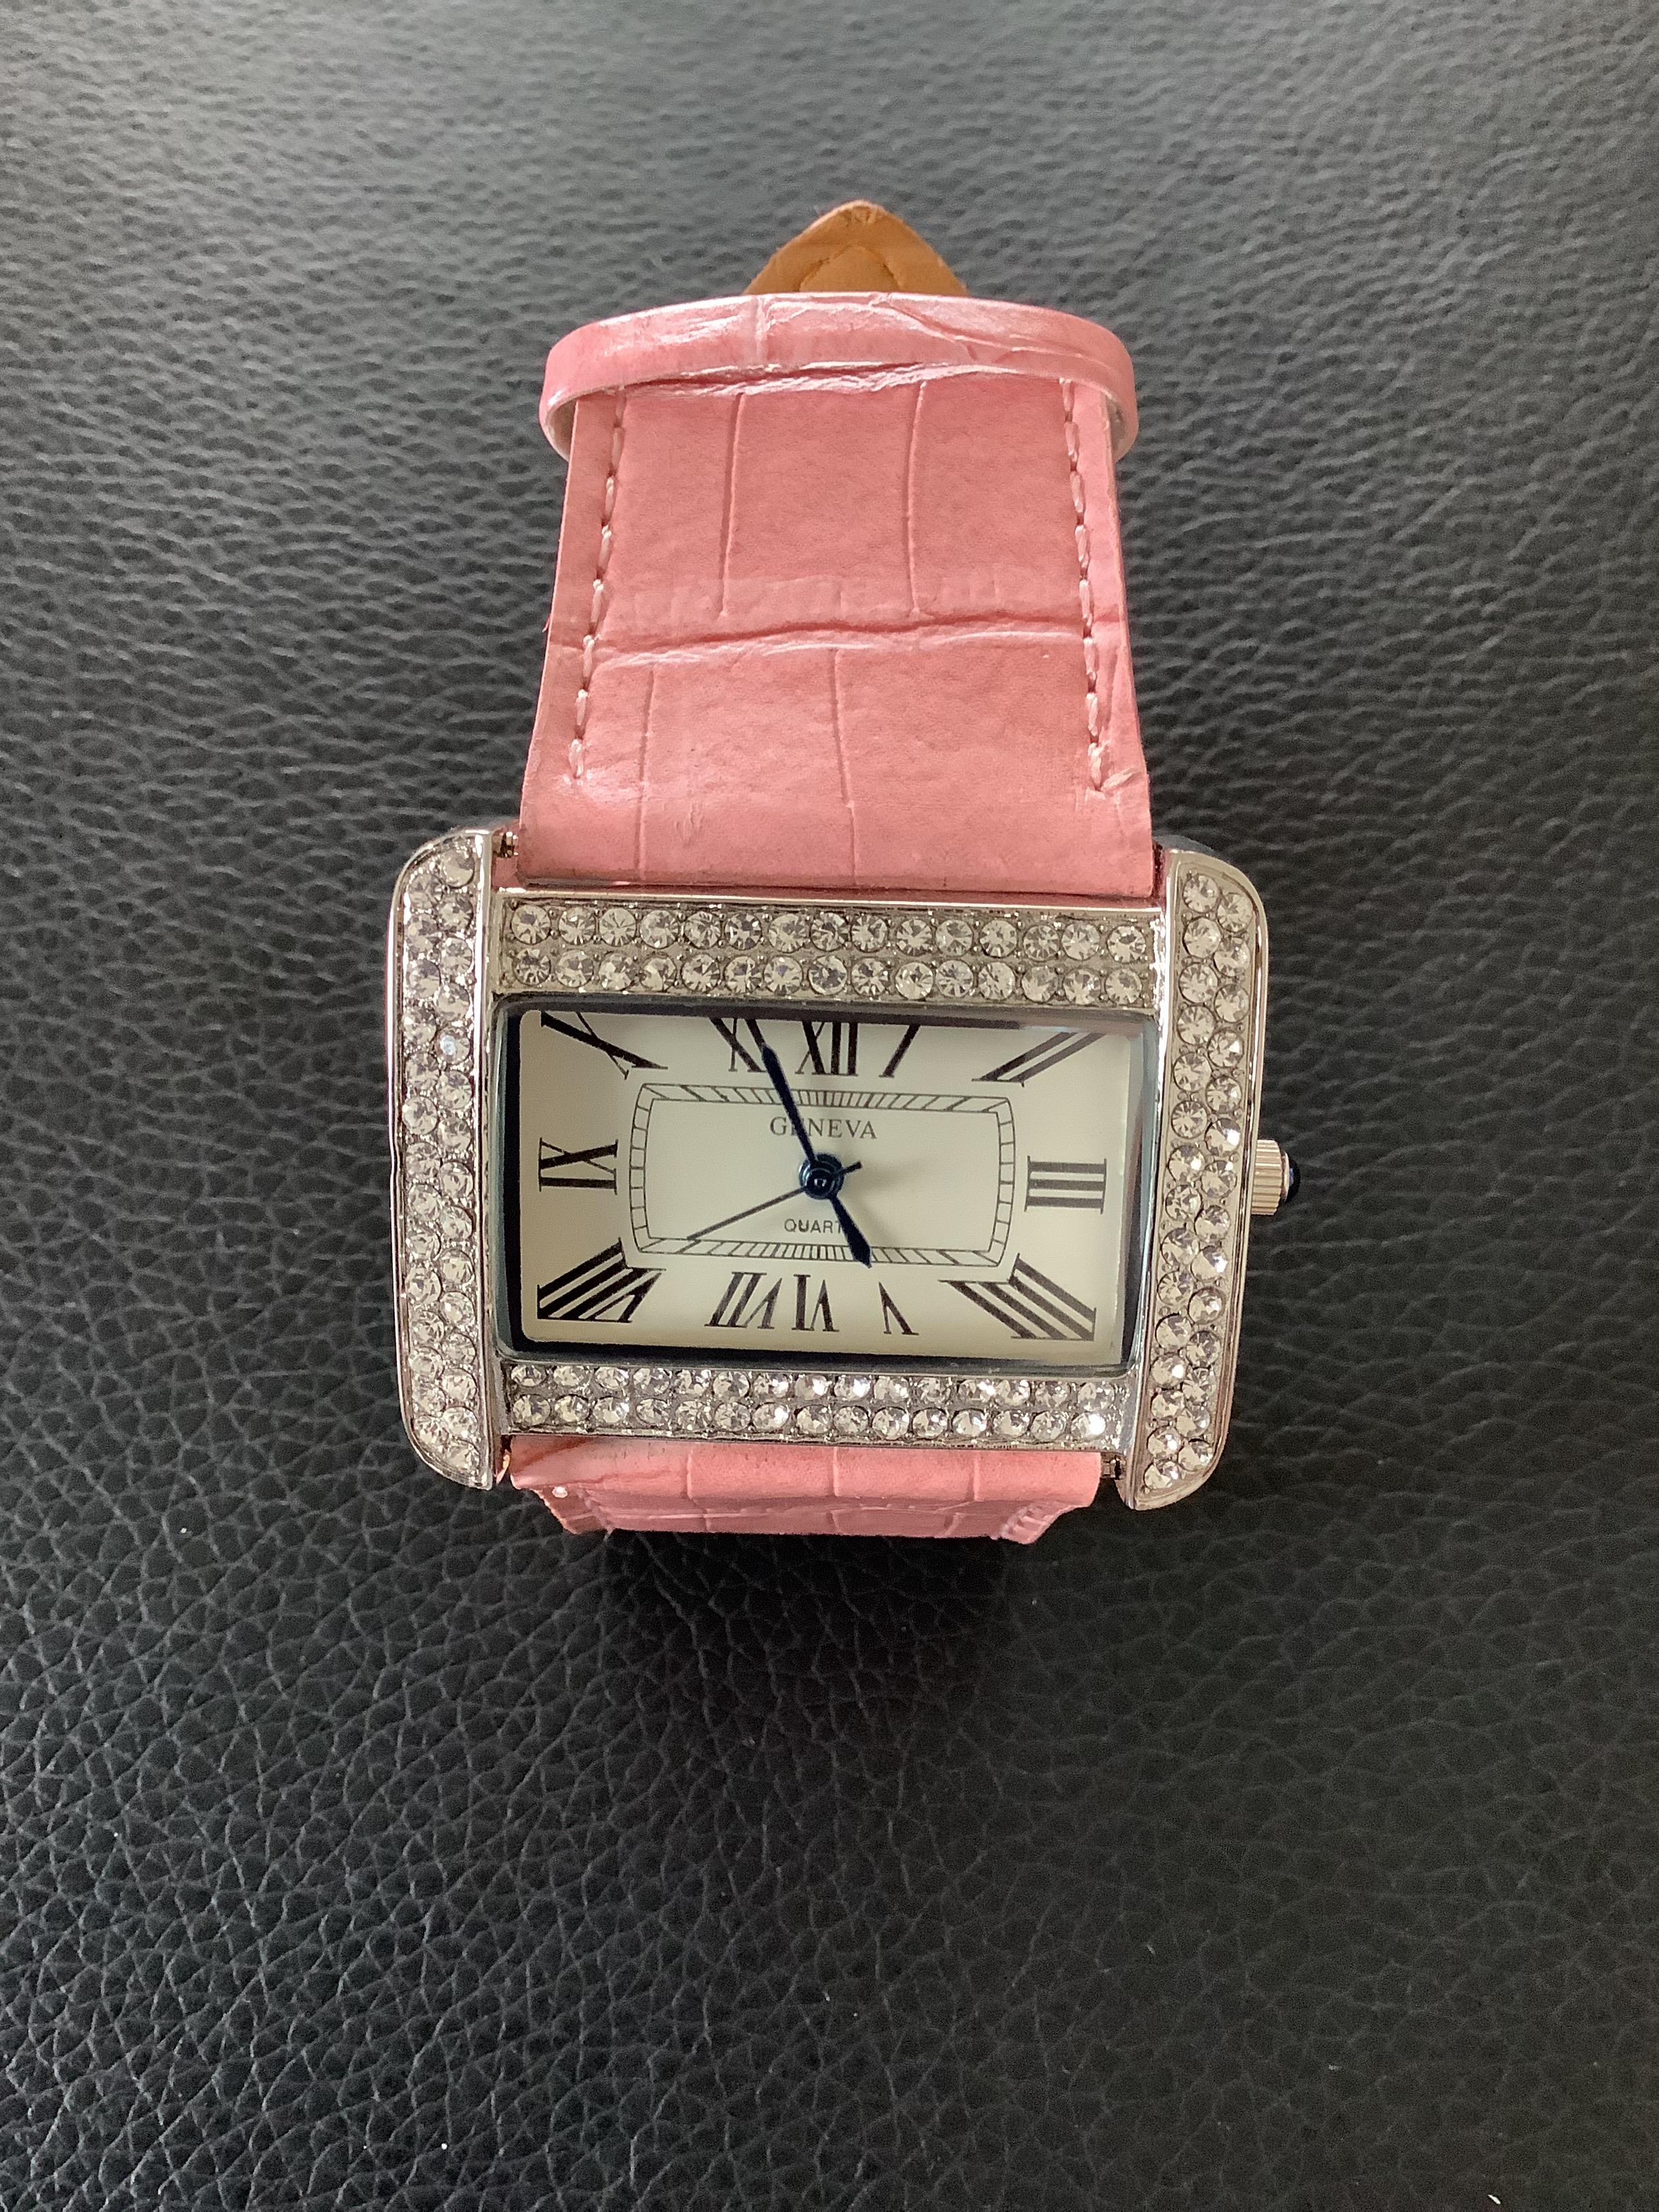 Ladies/Girls Pink GENEVA Wristwatch (GS 162 ) - Image 3 of 7